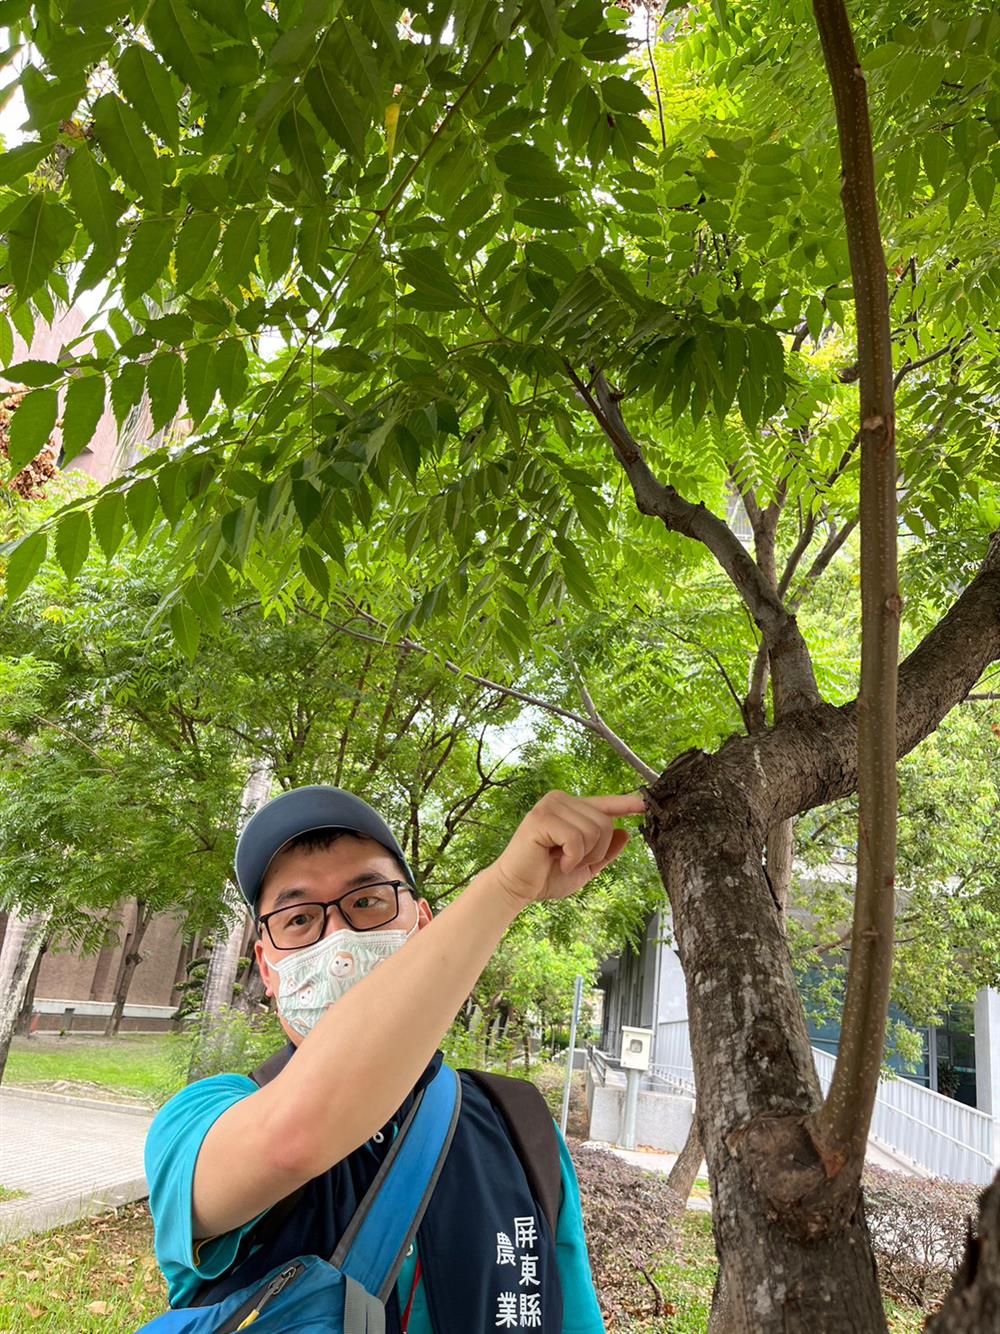 技士黃勝隆為我們說明如何正確修剪景觀樹木。